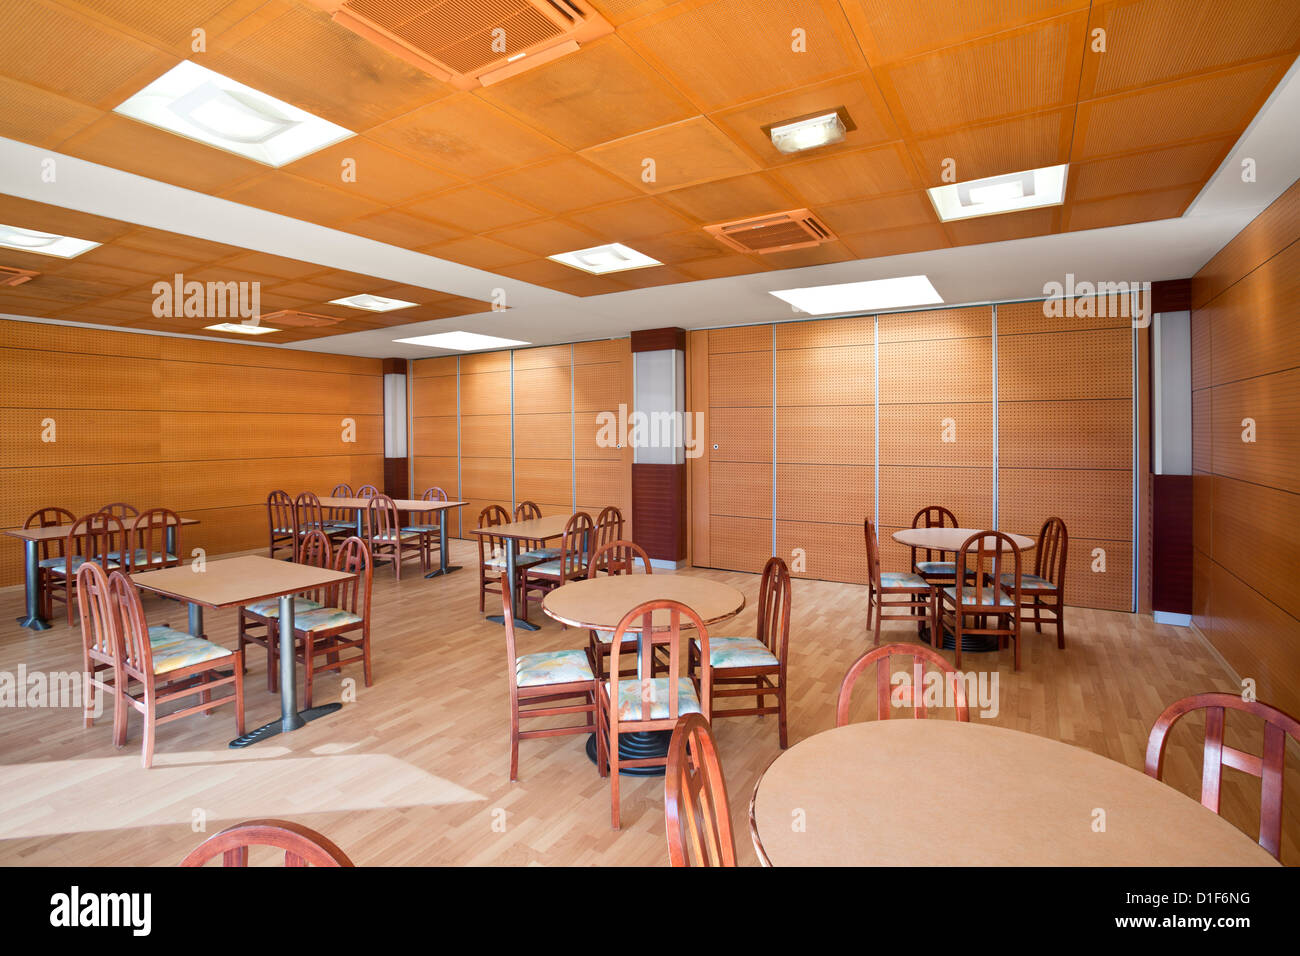 The cafeteria of a group. Cafétéria dans une collectivité. Stock Photo